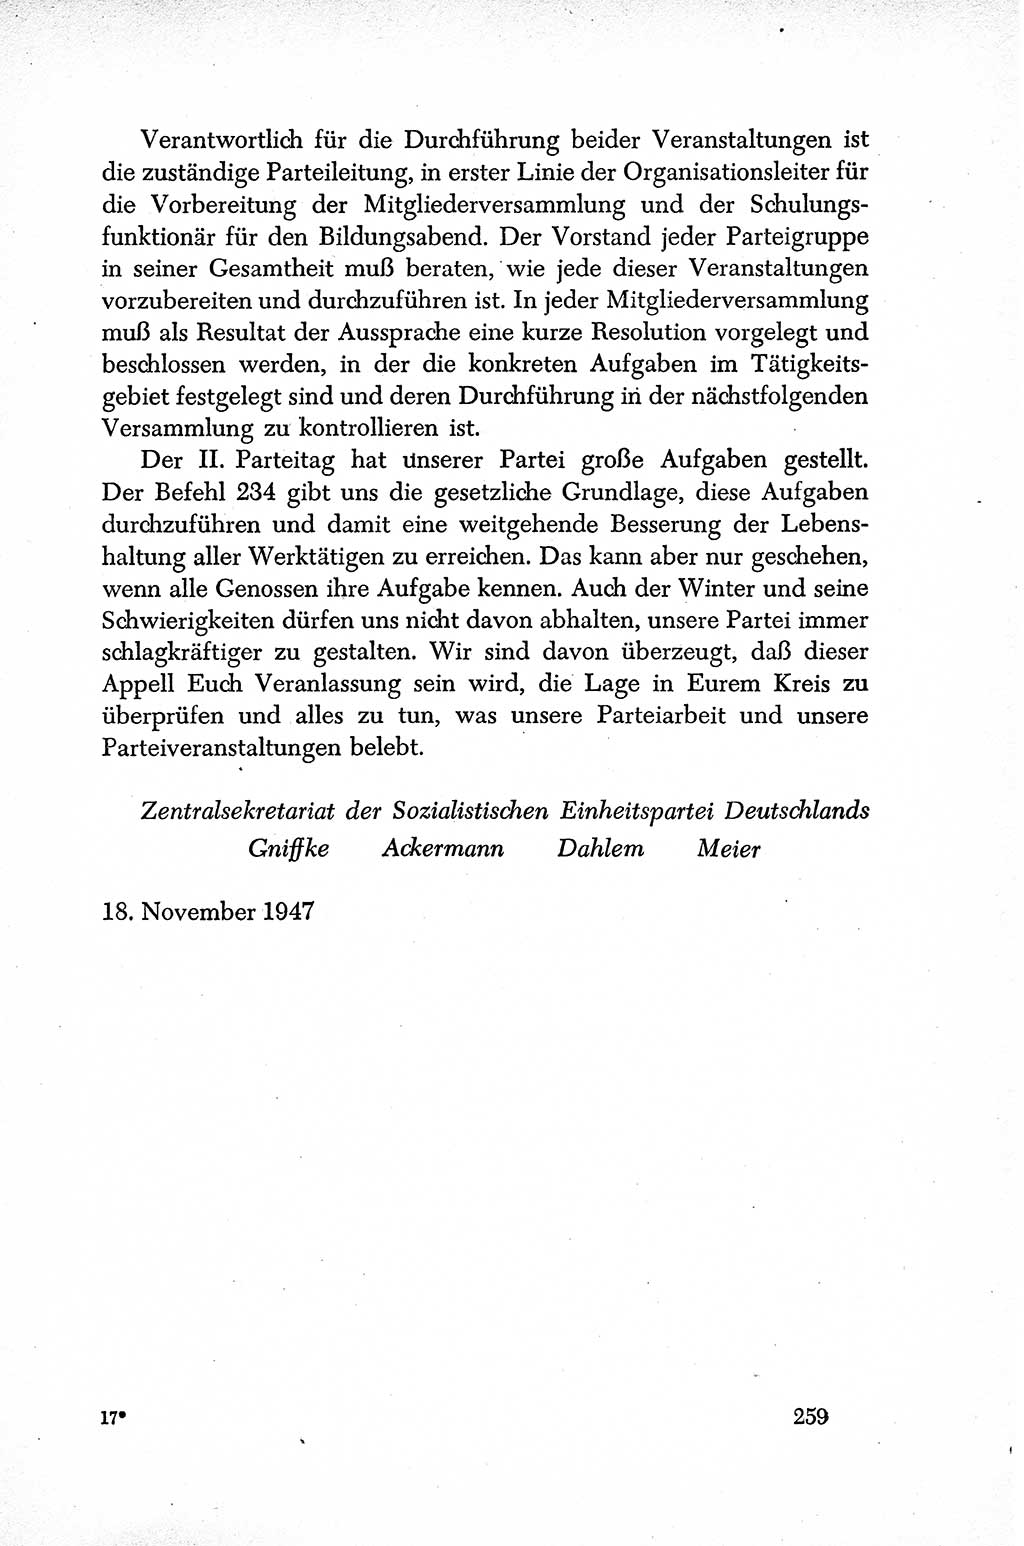 Dokumente der Sozialistischen Einheitspartei Deutschlands (SED) [Sowjetische Besatzungszone (SBZ) Deutschlands] 1946-1948, Seite 259 (Dok. SED SBZ Dtl. 1946-1948, S. 259)